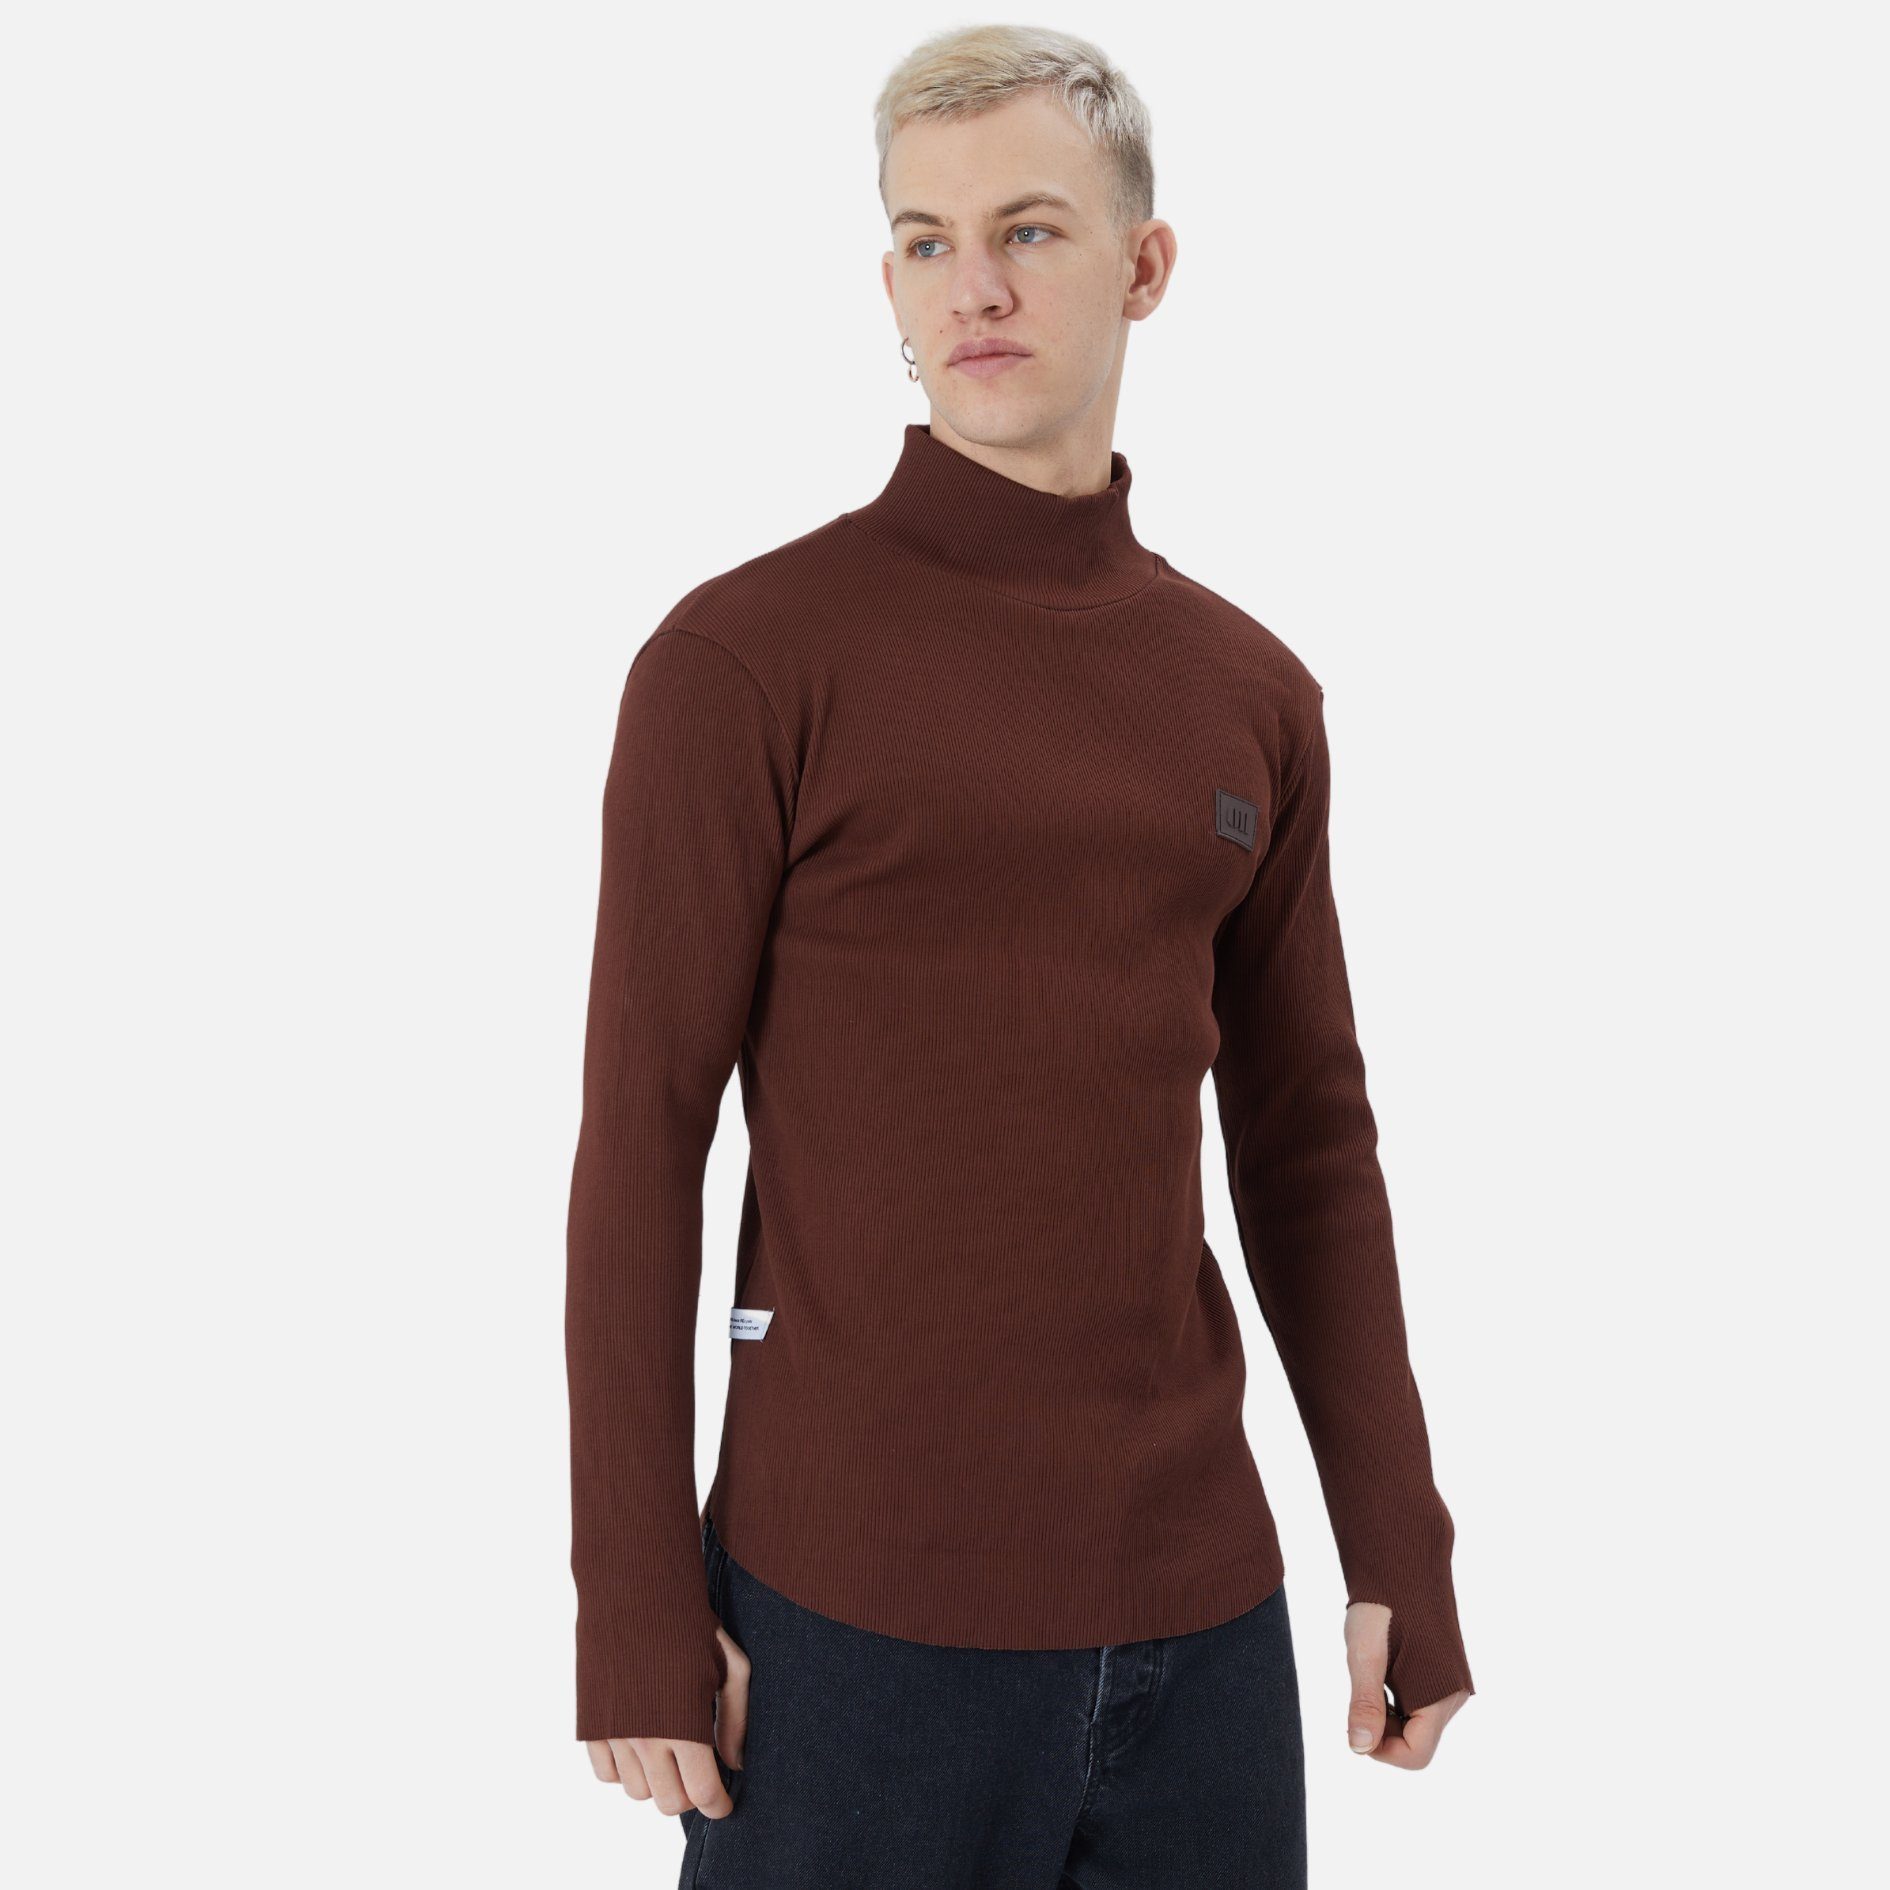 COFI Casuals Sweatshirt Herren Fit Braun Rundhals Regular Pullover Sweatshirt